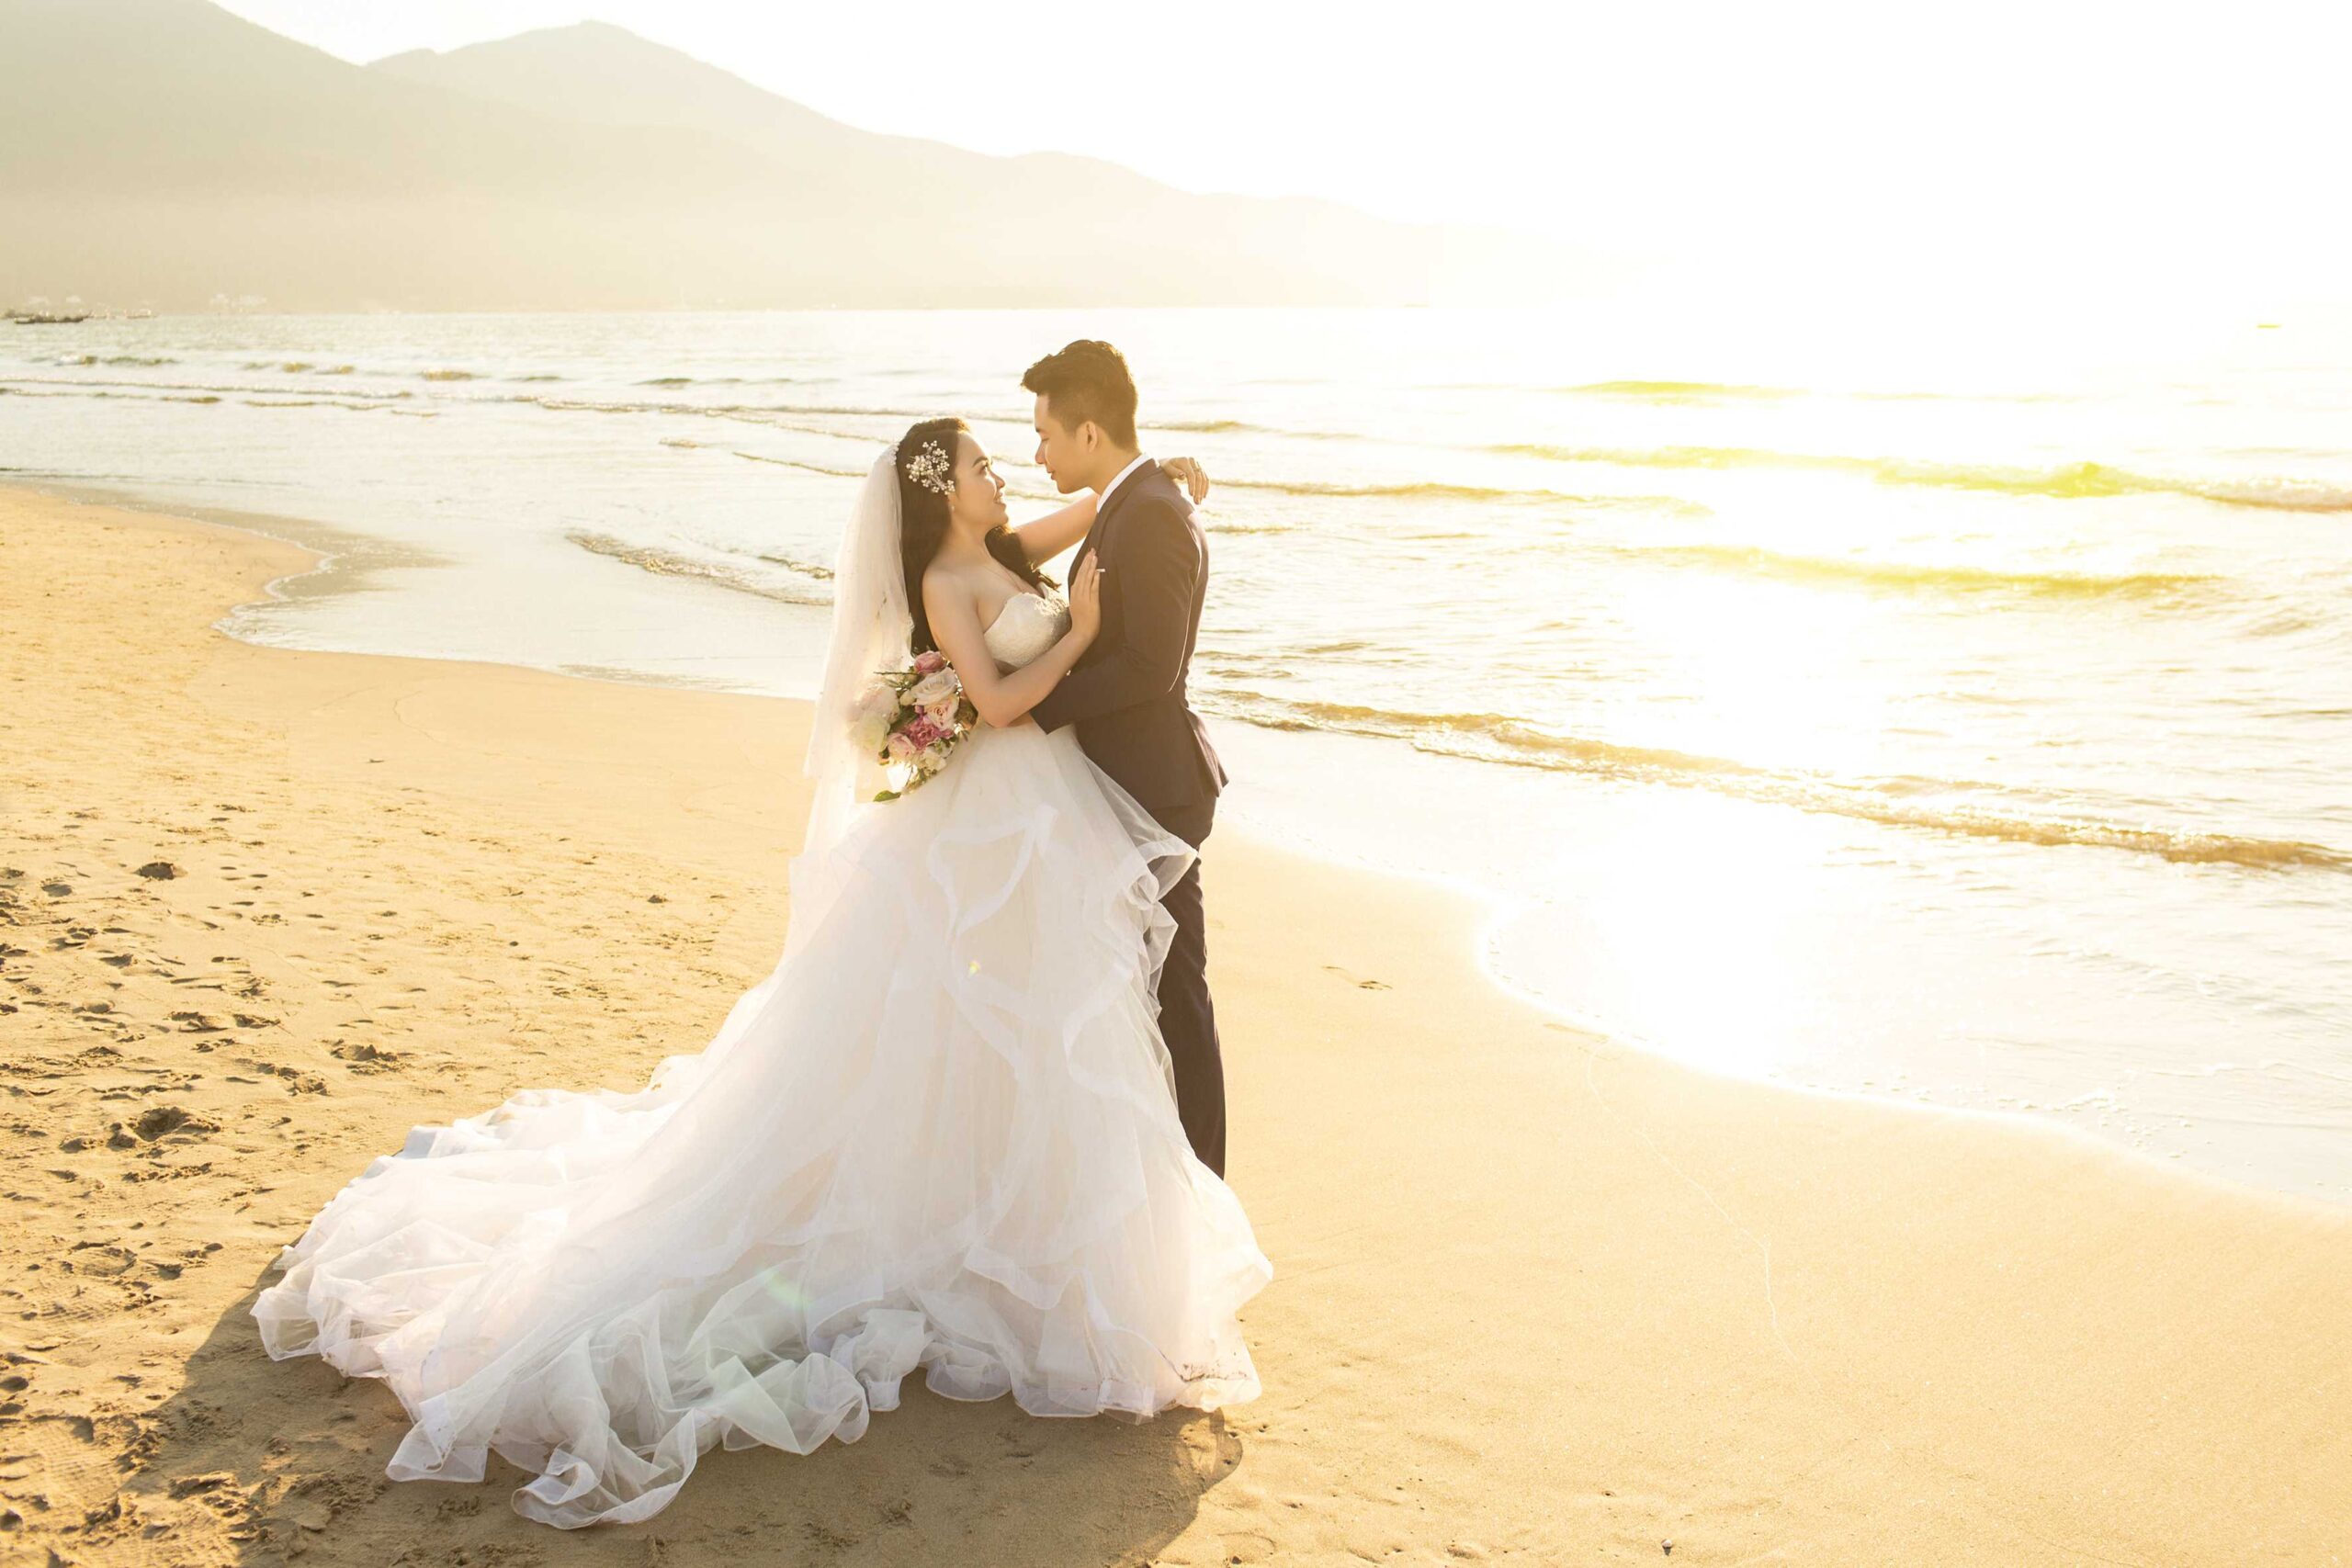 Chụp ảnh cưới với biển – địa điểm hoàn hảo cho bộ ảnh cưới tuyệt vời